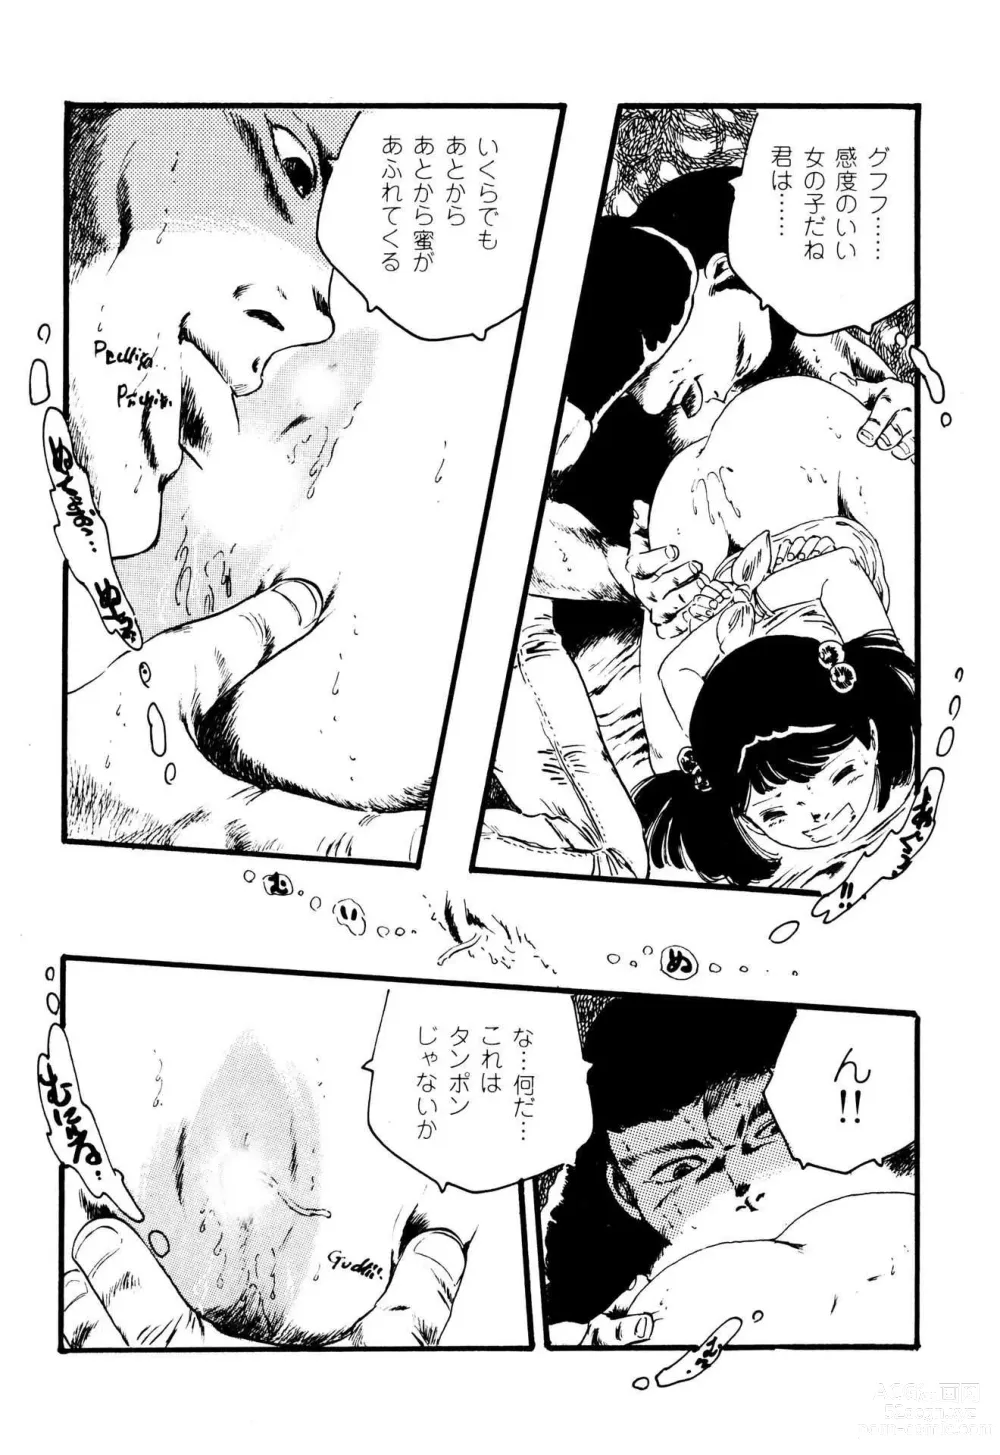 Page 21 of manga Koisuru Yousei